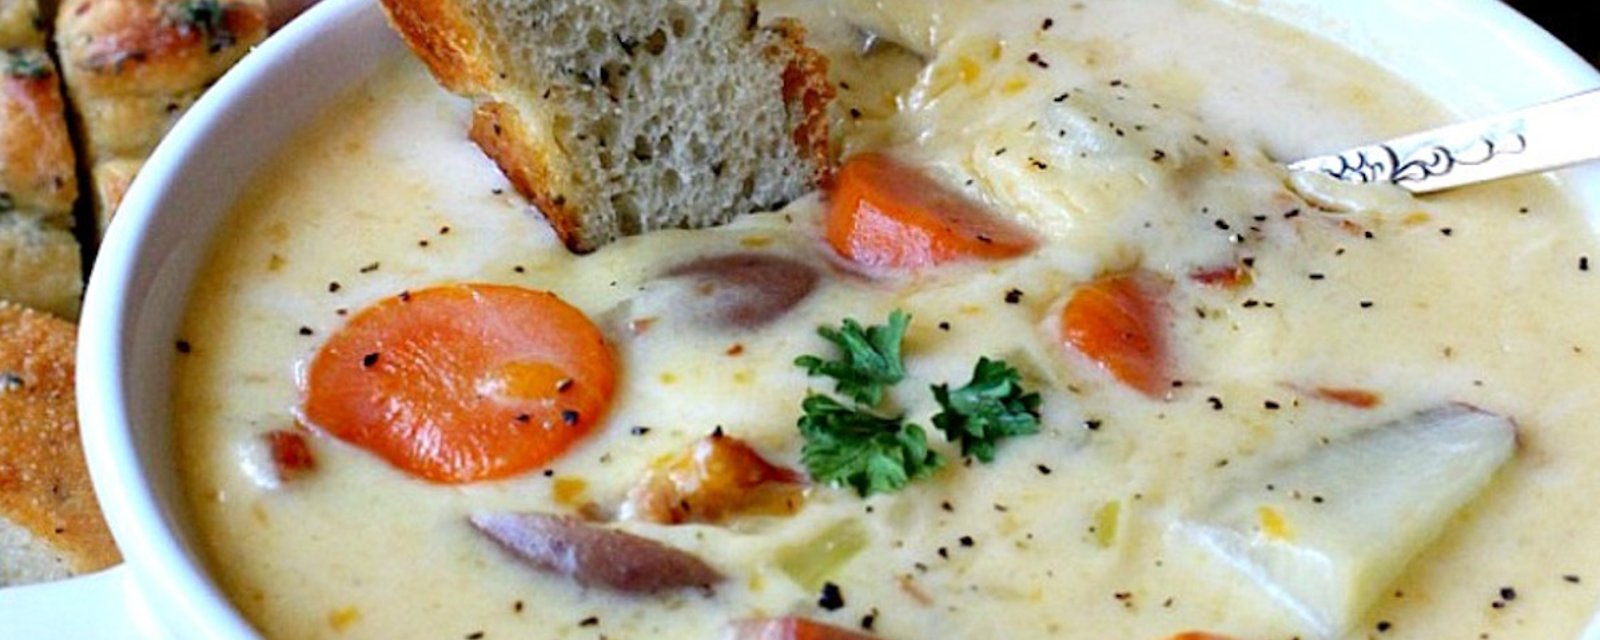 Des Français la nomment la « soupe canadienne », mais peu importe sa réelle origine, elle est délicieuse!